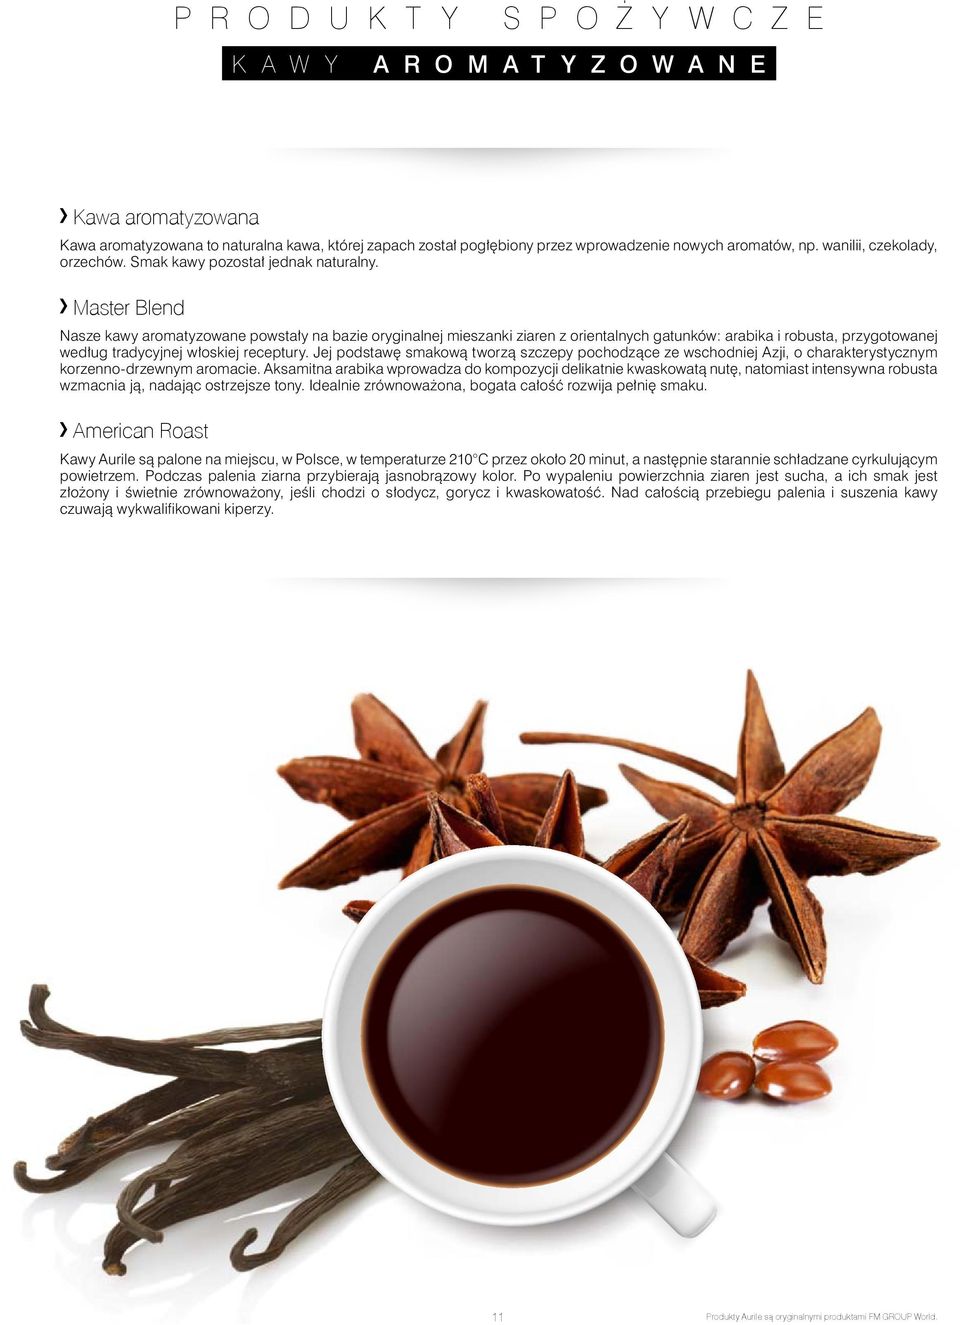 Master Blend Nasze kawy aromatyzowane powstały na bazie oryginalnej mieszanki ziaren z orientalnych gatunków: arabika i robusta, przygotowanej według tradycyjnej włoskiej receptury.